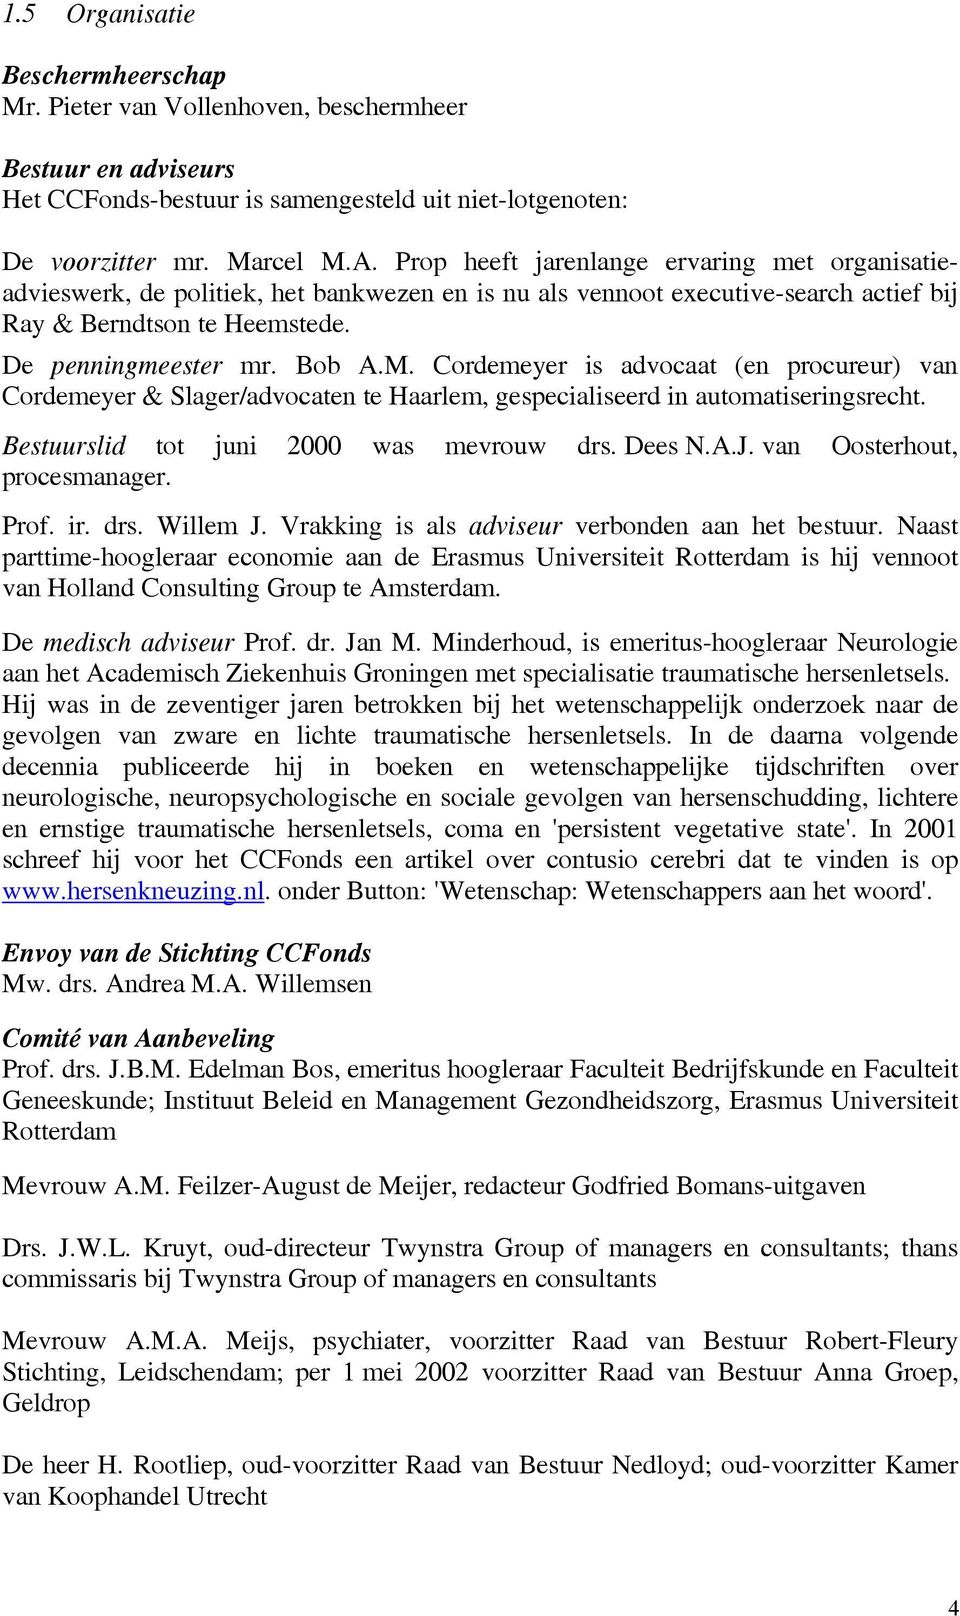 Cordemeyer is advocaat (en procureur) van Cordemeyer & Slager/advocaten te Haarlem, gespecialiseerd in automatiseringsrecht. Bestuurslid tot juni 2000 was mevrouw drs. Dees N.A.J.